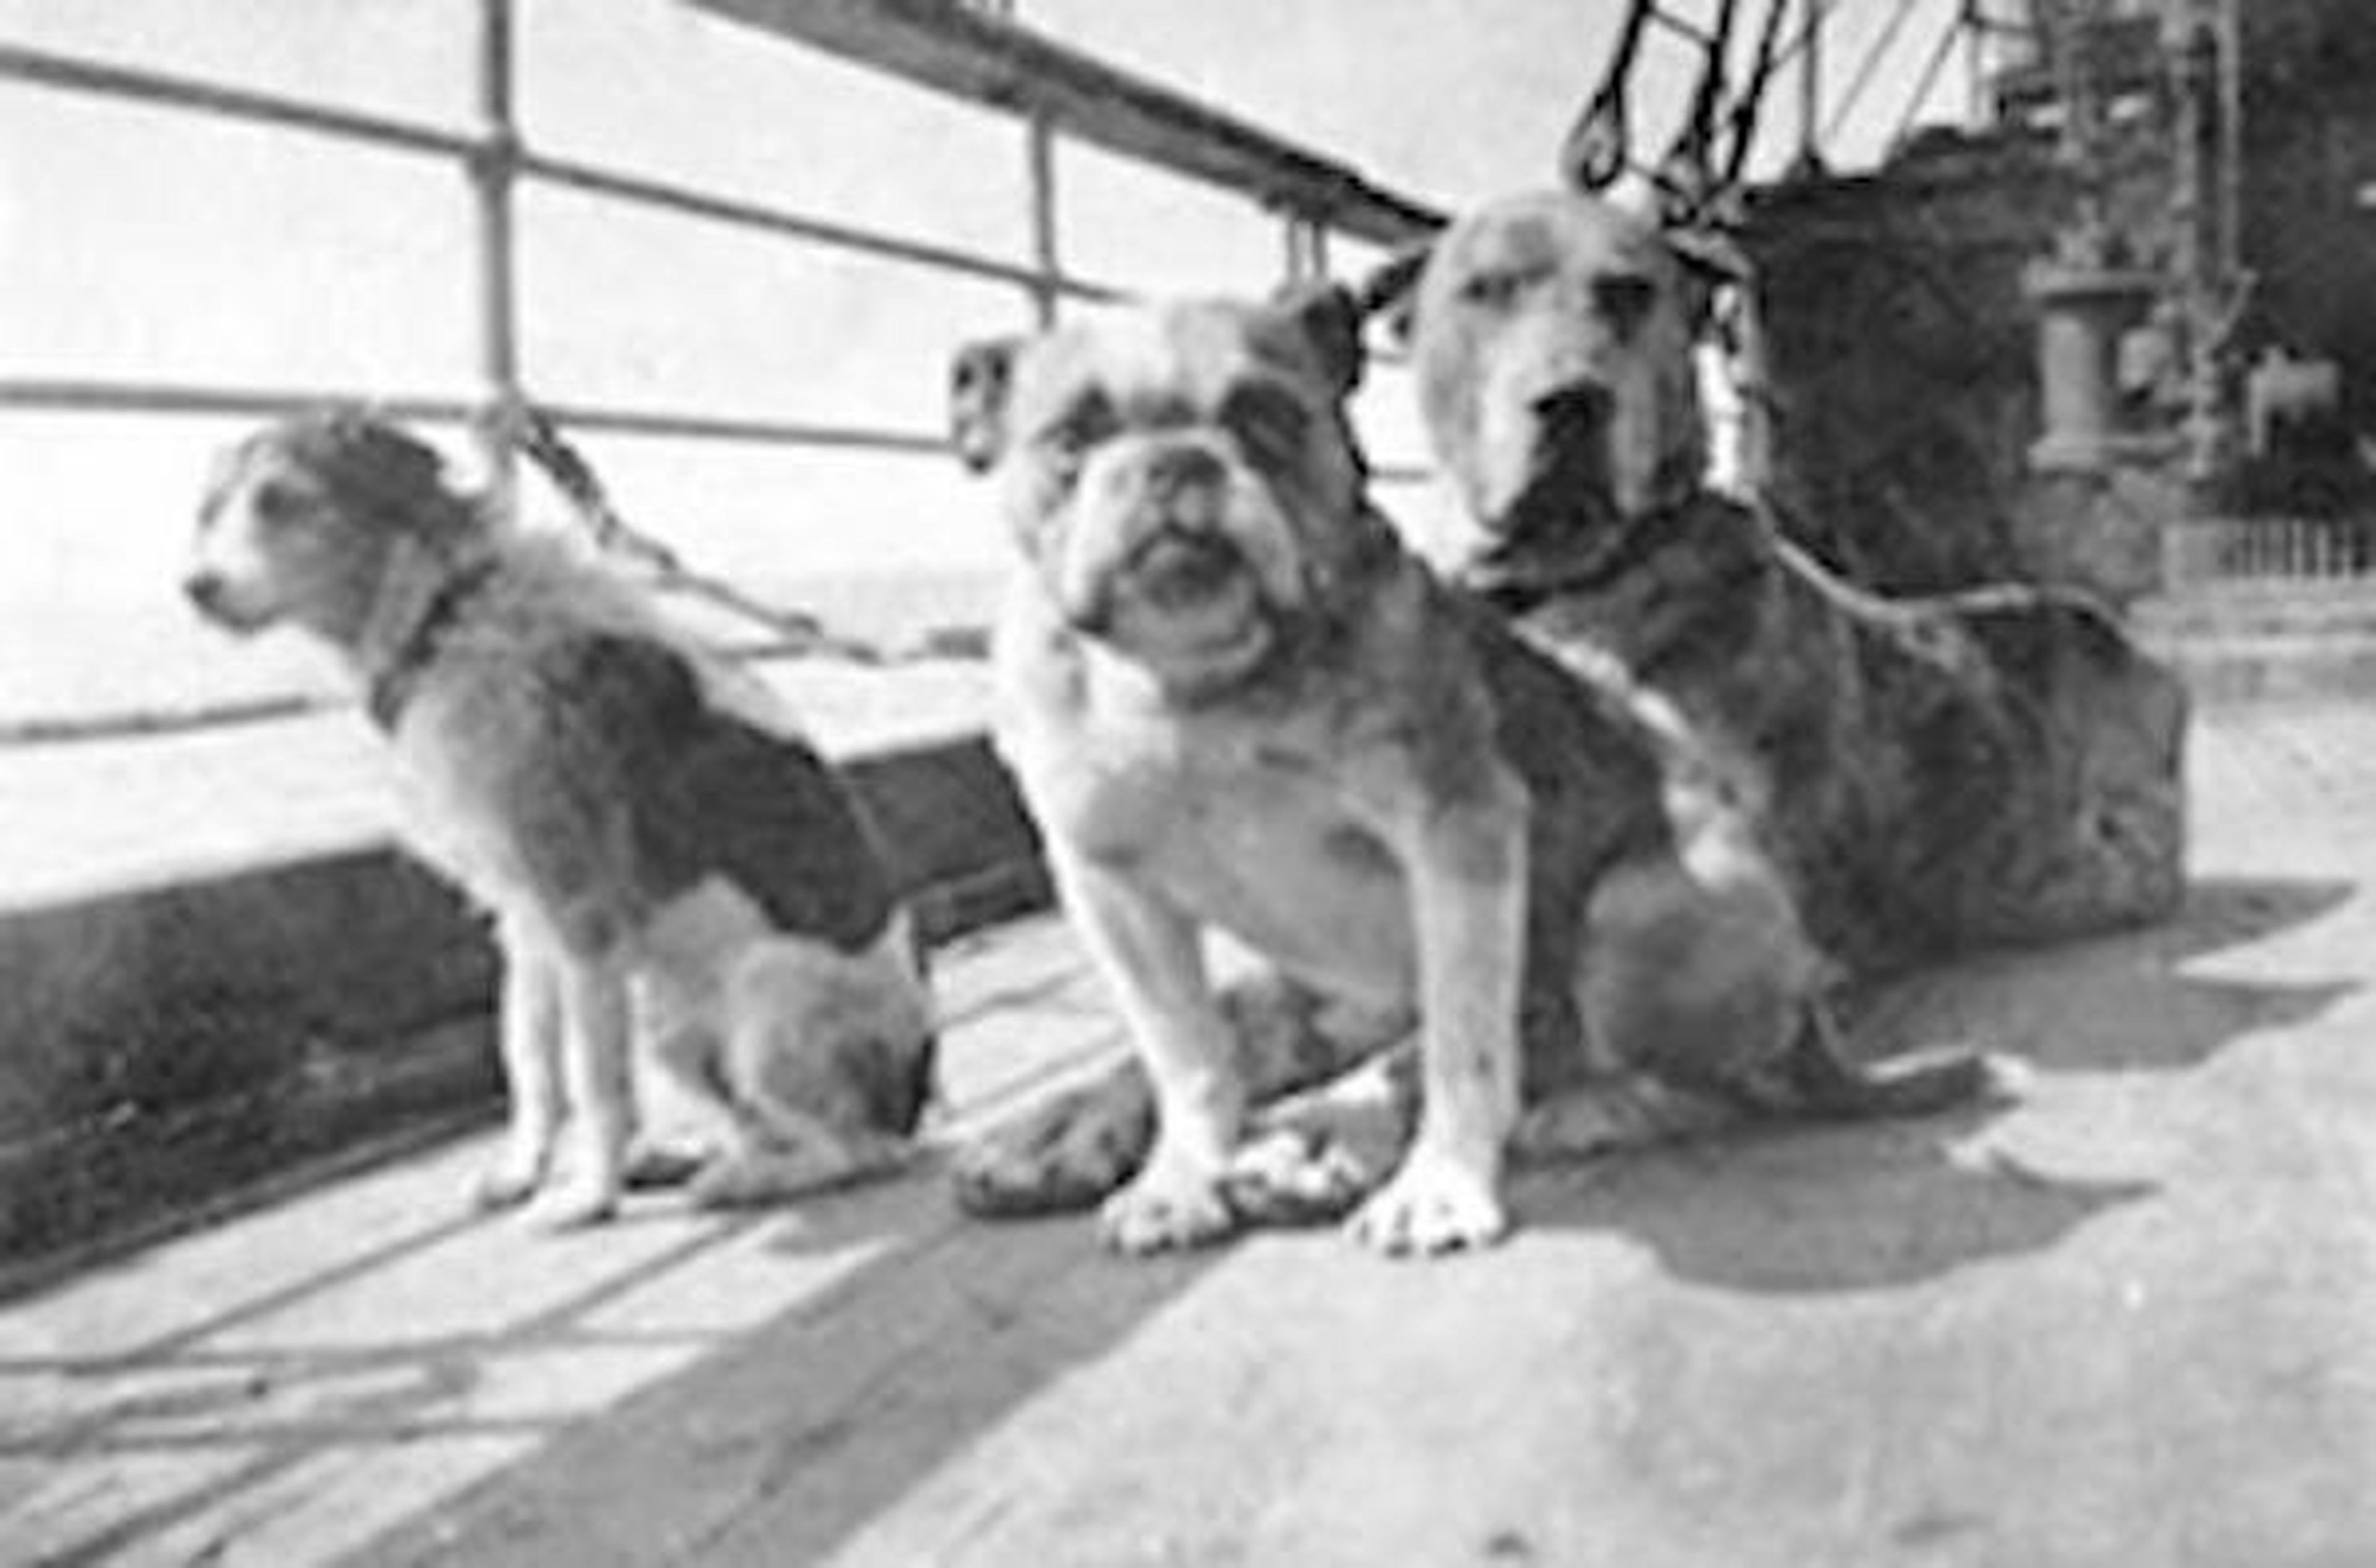 Perros del Titanic, incluyendo al perro de Isham en el extremo derecho.